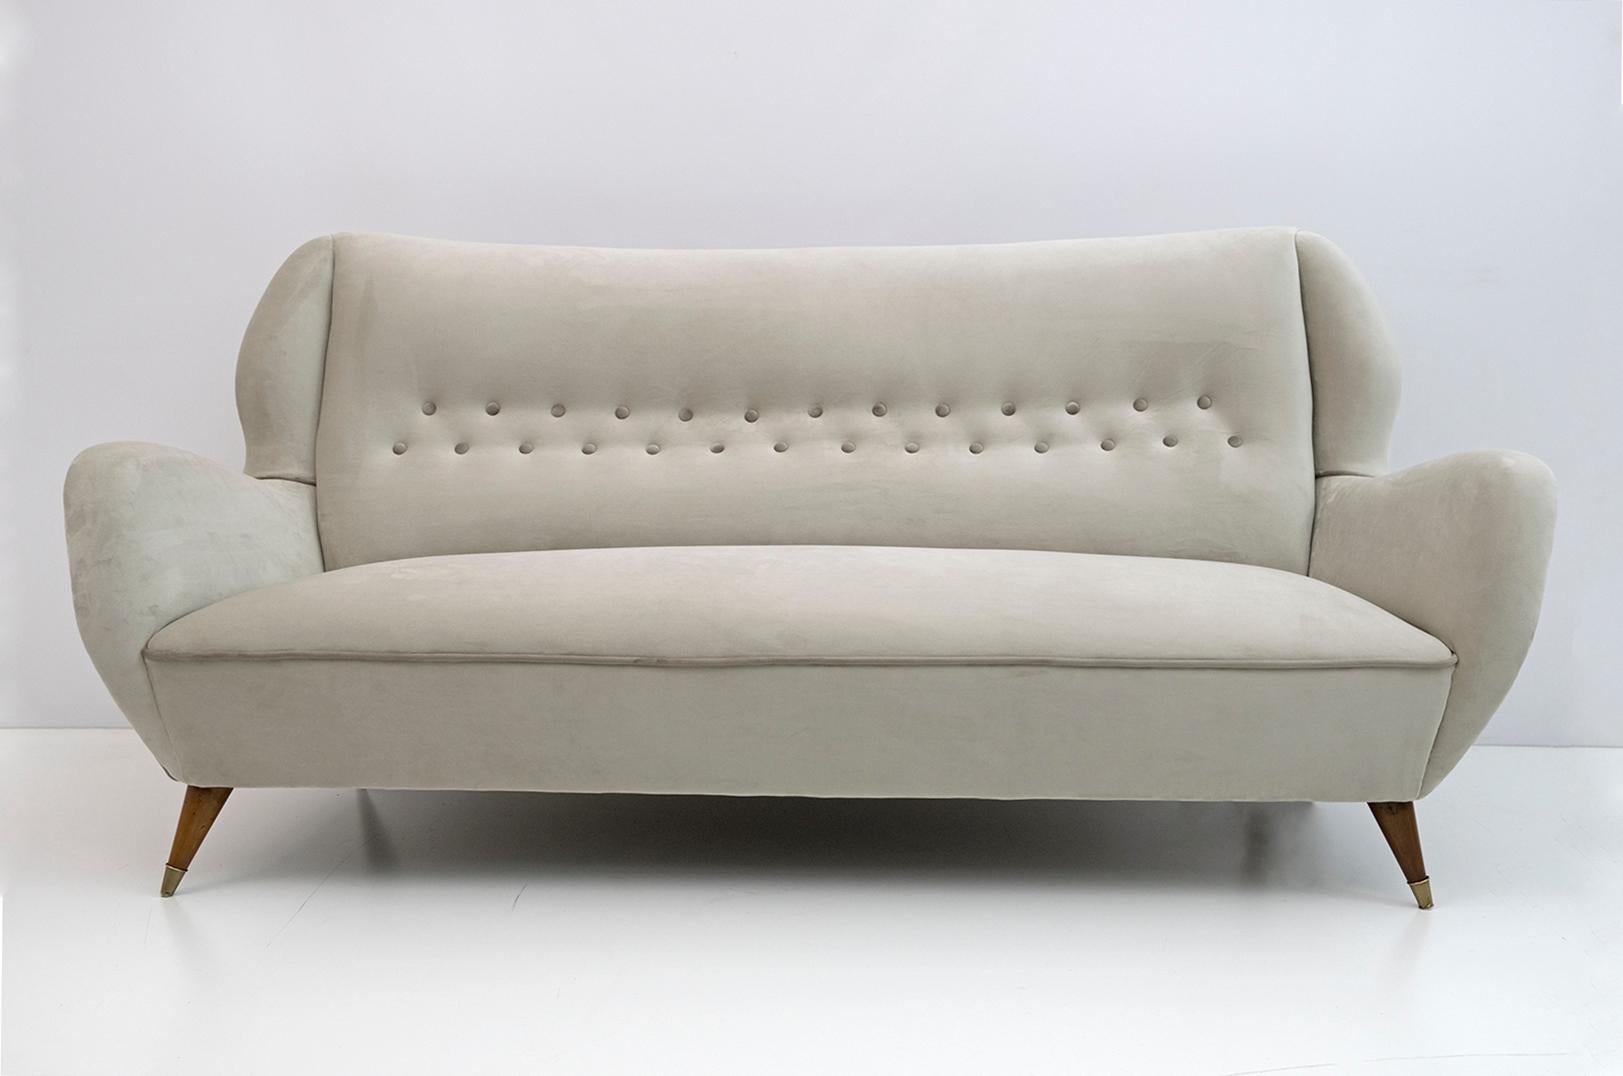 Elegantes und prächtiges Dreisitzer-Sofa mit hoher Rückenlehne, Gio Ponti zugeschrieben, 1950er Jahre, für ISA Edizioni, Bergamo. Geschnitztes Profil, raffinierte Linien, sinnlicher und tiefer Komfort. Die elfenbeinfarbene Samtpolsterung wurde neu